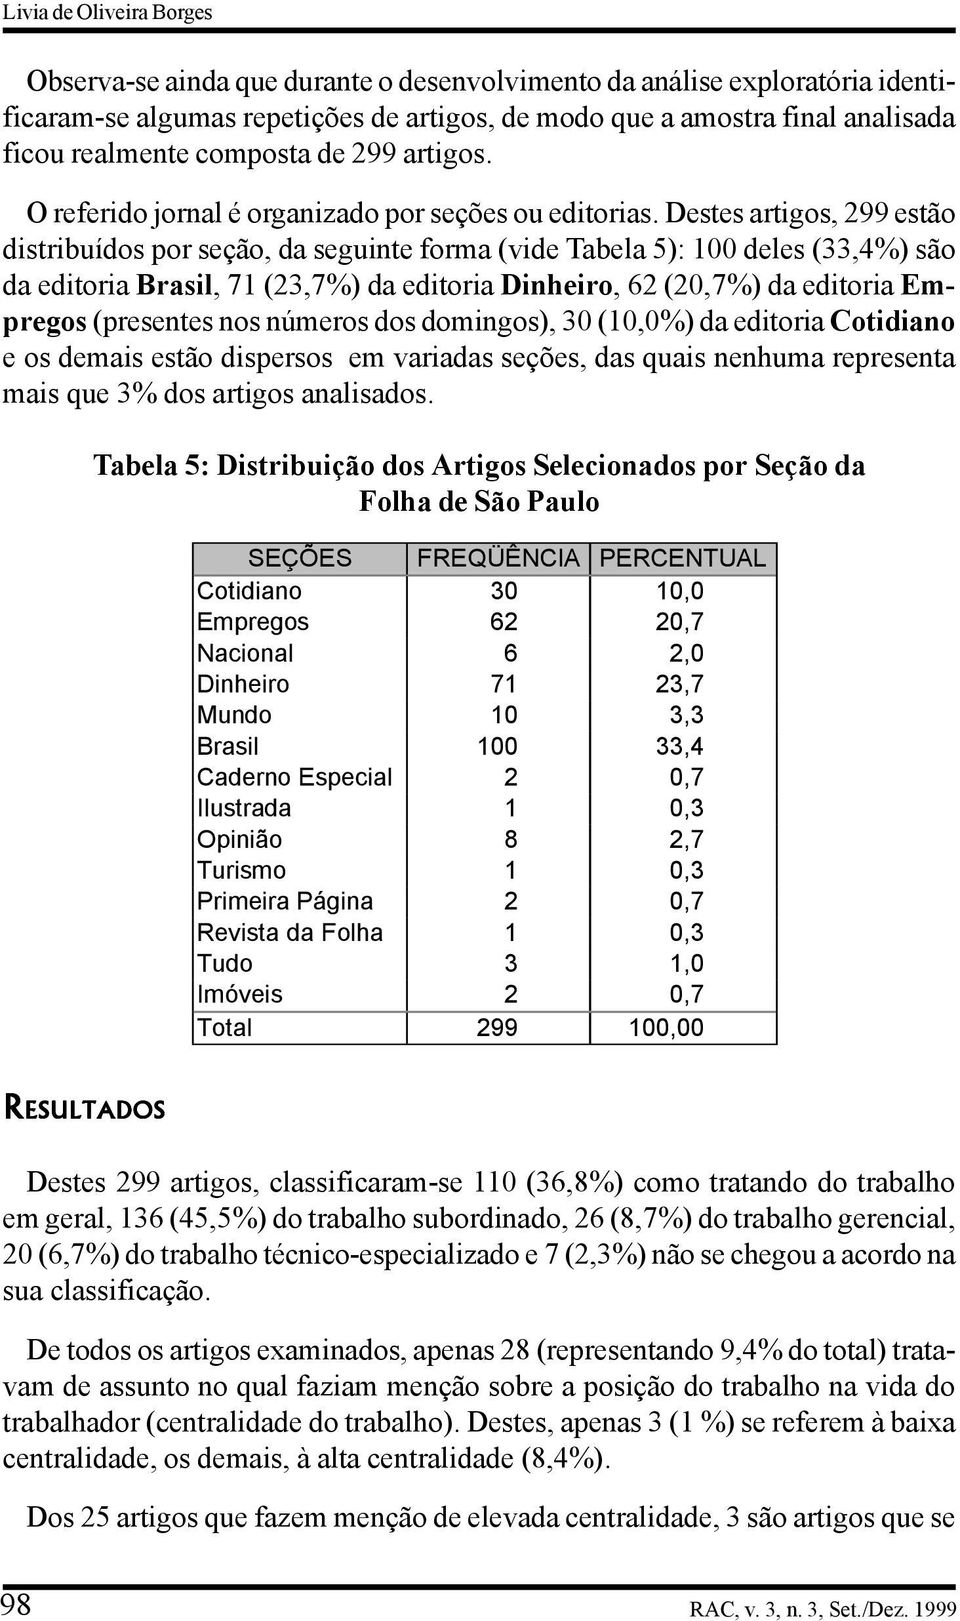 Destes artigos, 299 estão distribuídos por seção, da seguinte forma (vide Tabela 5): 100 deles (33,4%) são da editoria Brasil, 71 (23,7%) da editoria Dinheiro, 62 (20,7%) da editoria Empregos